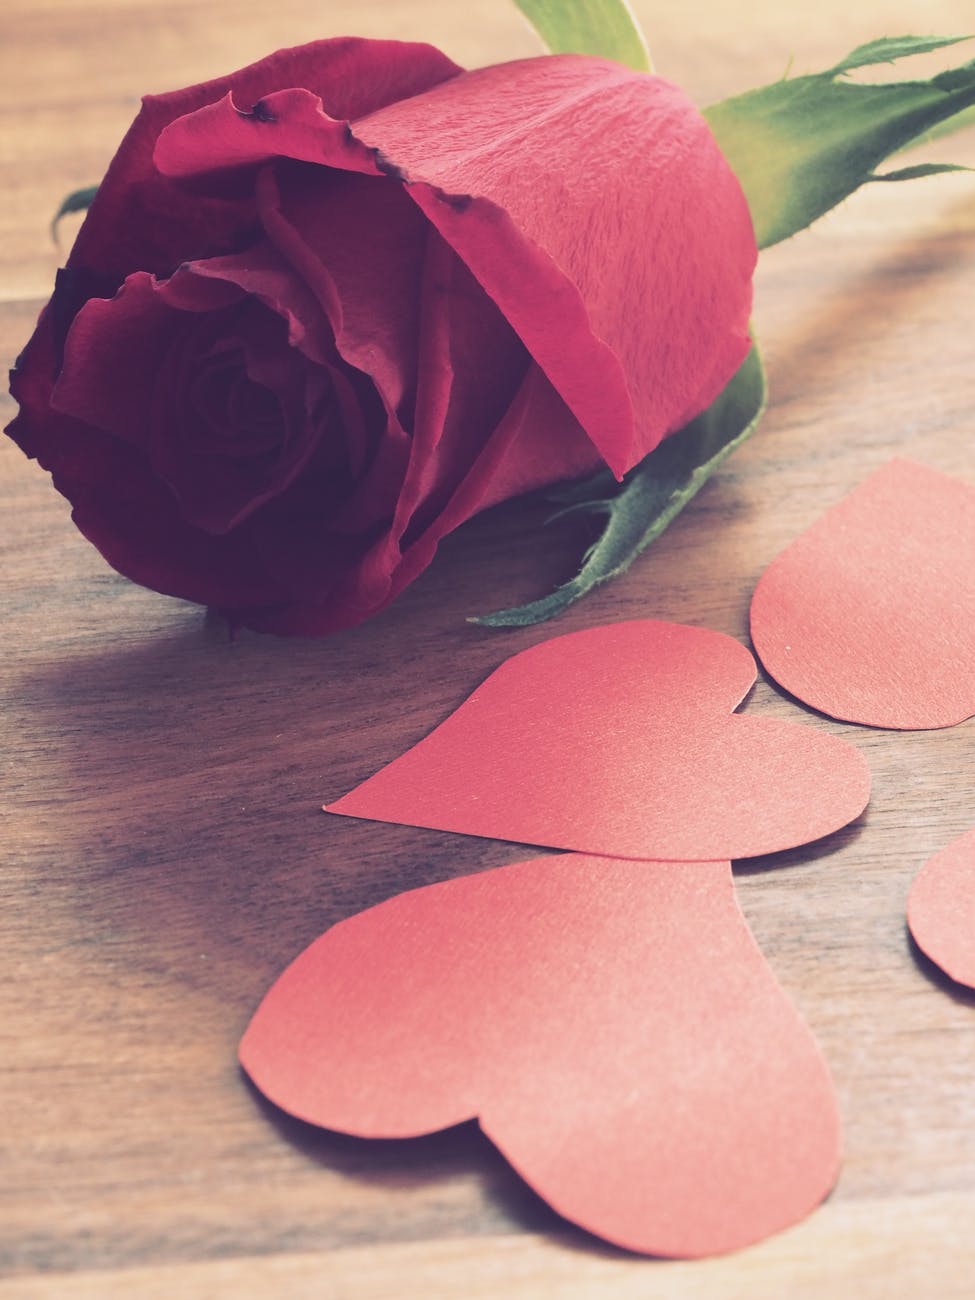 Decoração para dia dos namorados - As flores podem ser usadas para compor um caminho até o cômodo em que será realizada a celebração